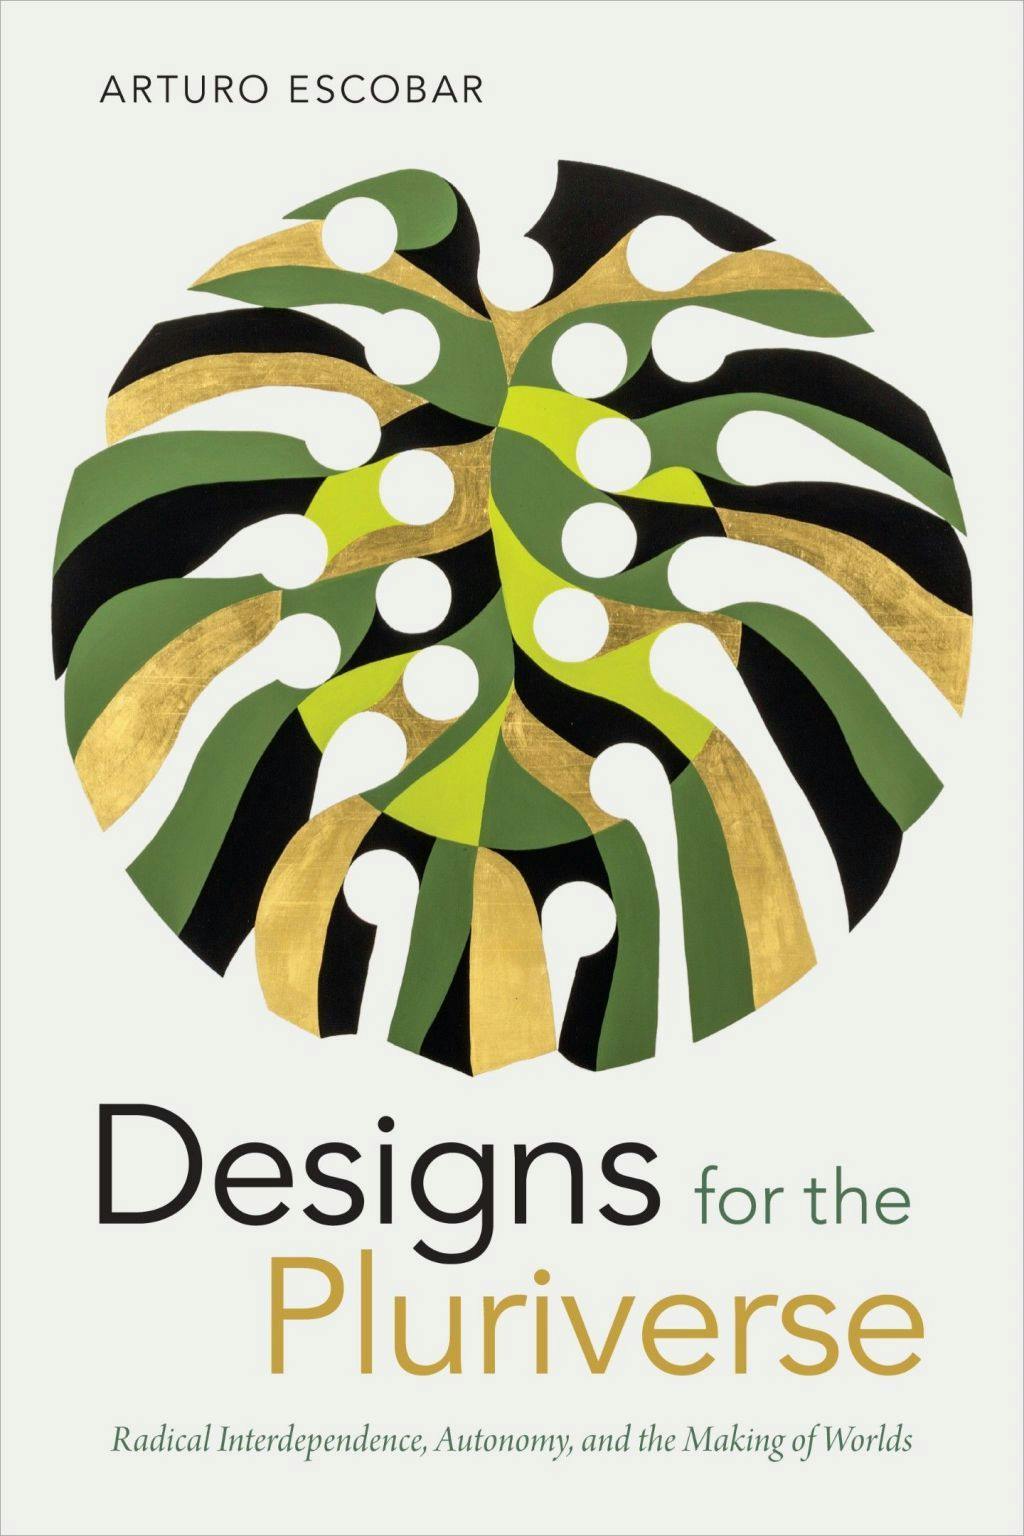 Cover image of Designs for the Pluriverse, Duke University Press, 2018. Cover art: Gabriel Orozco, Piñanona 1, 2013